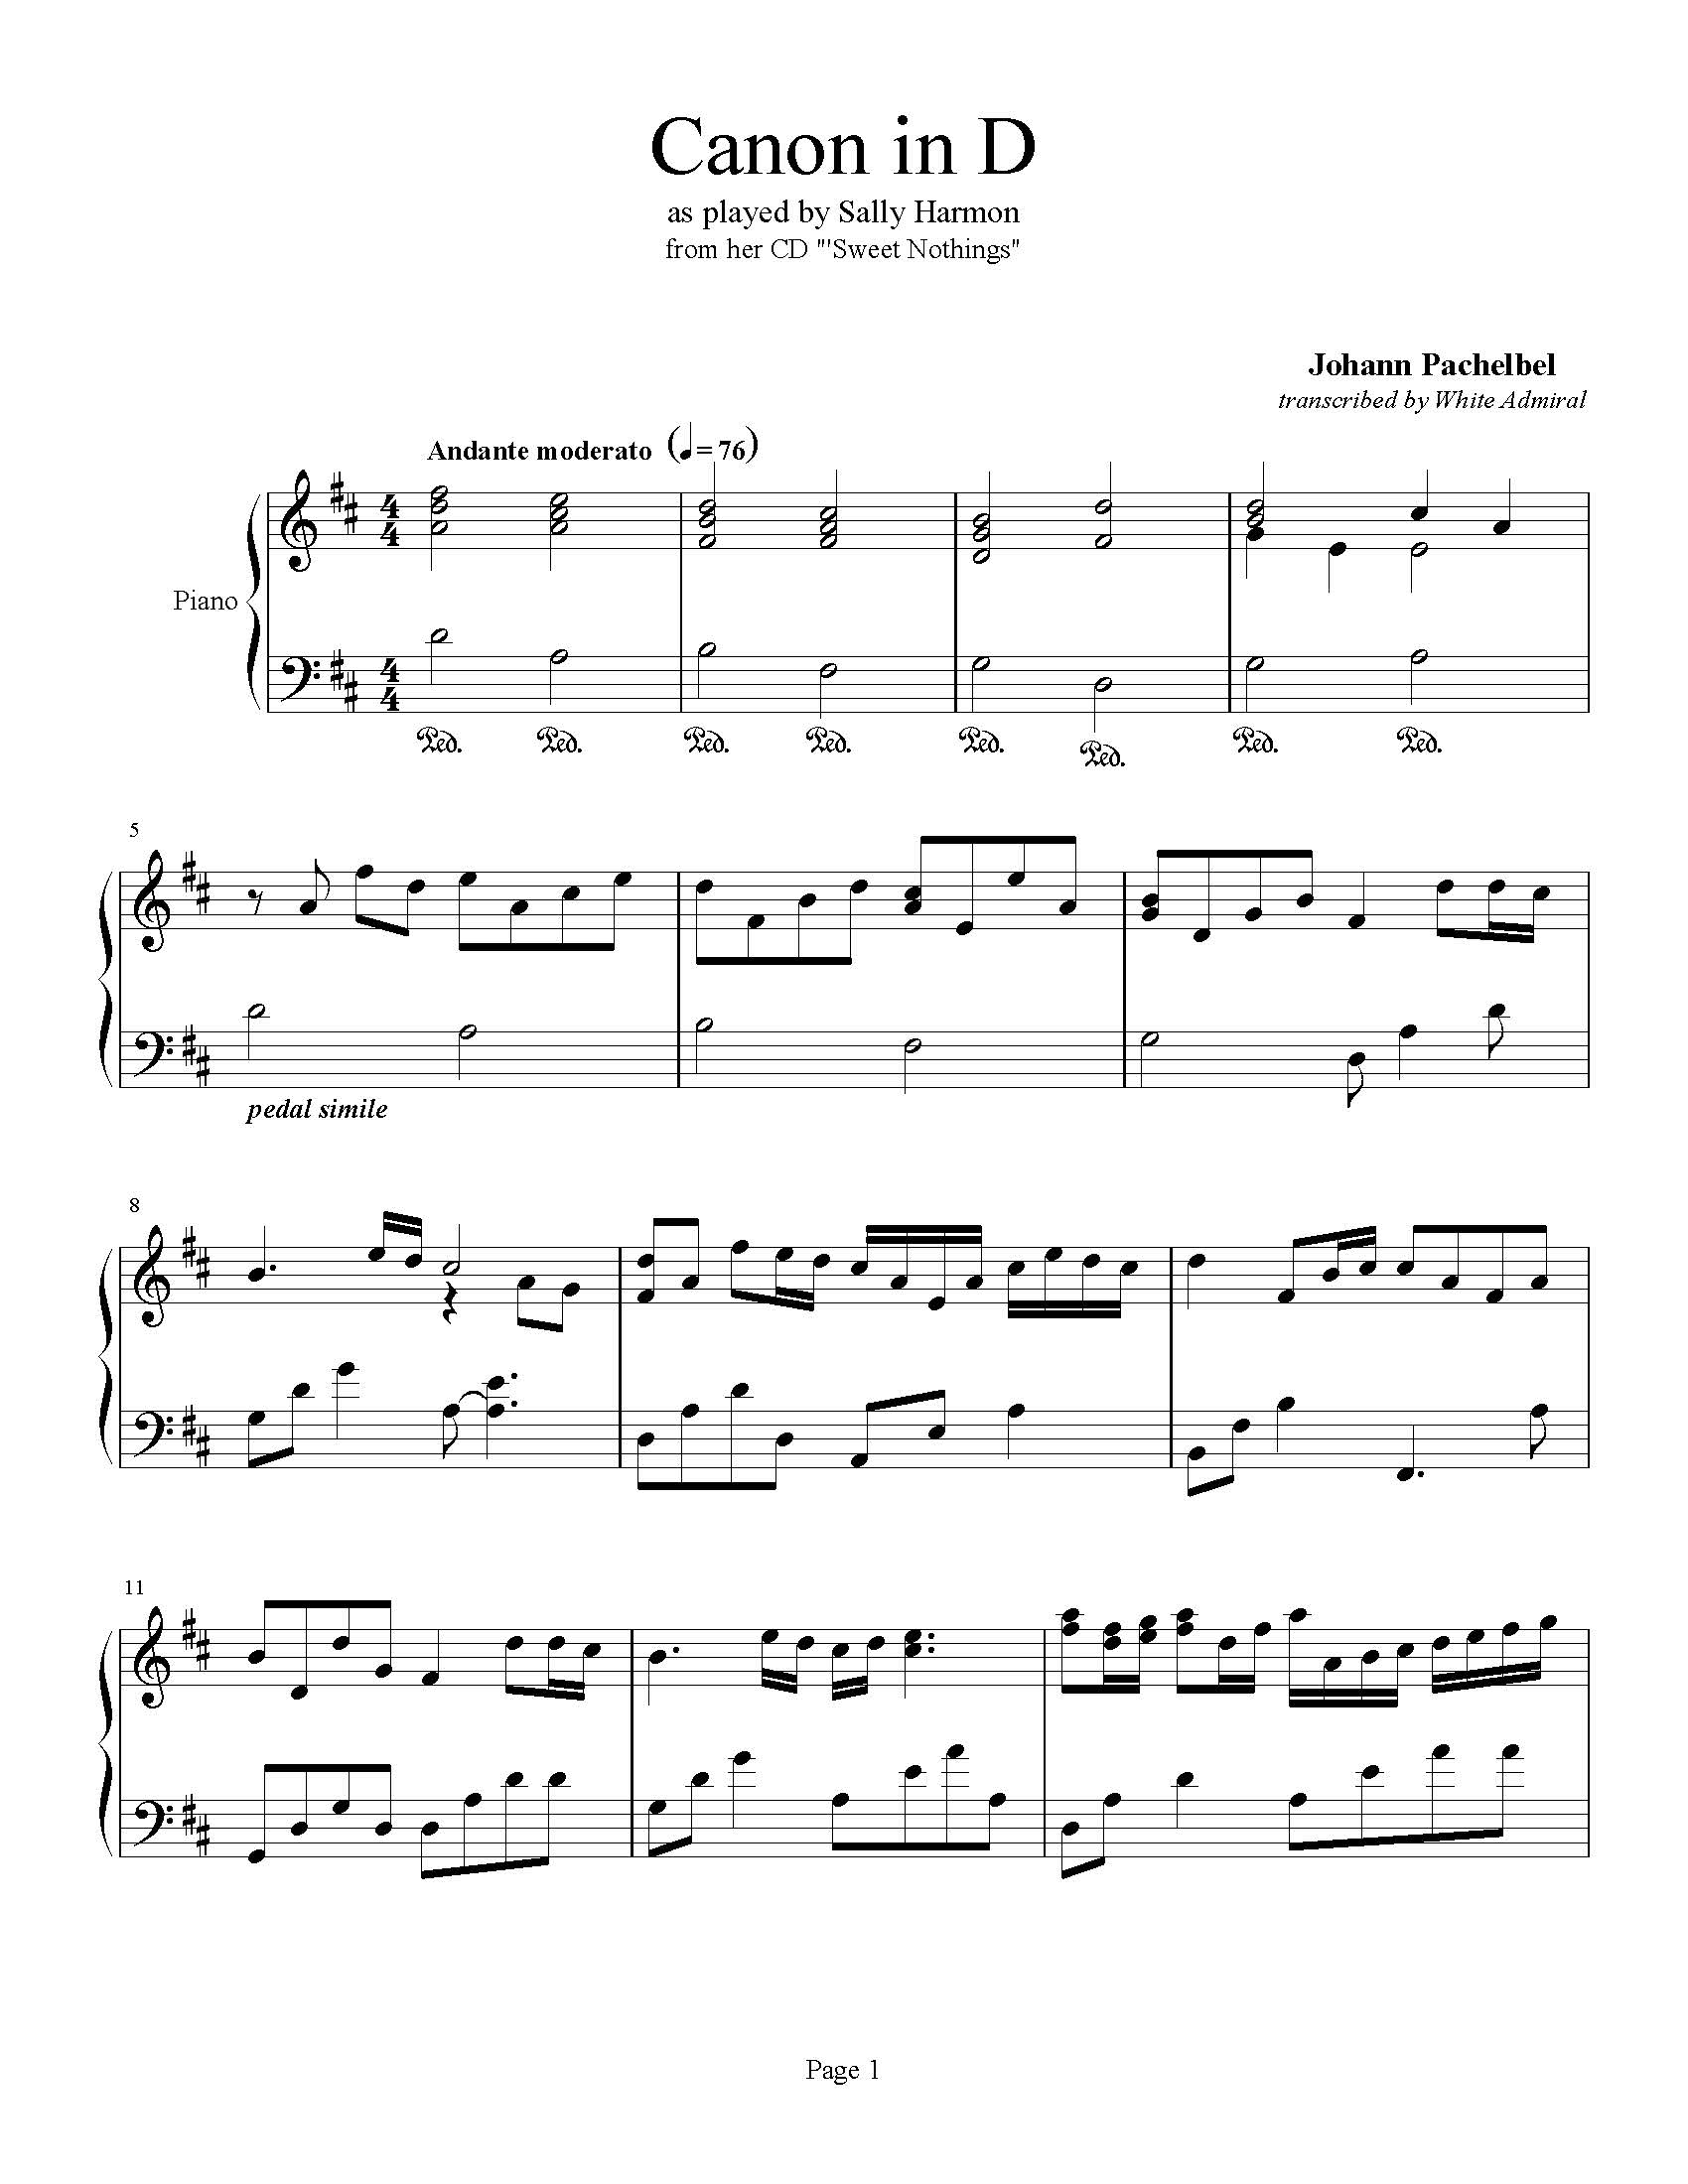 Canon in D - Pachelbel True Piano Transcriptions